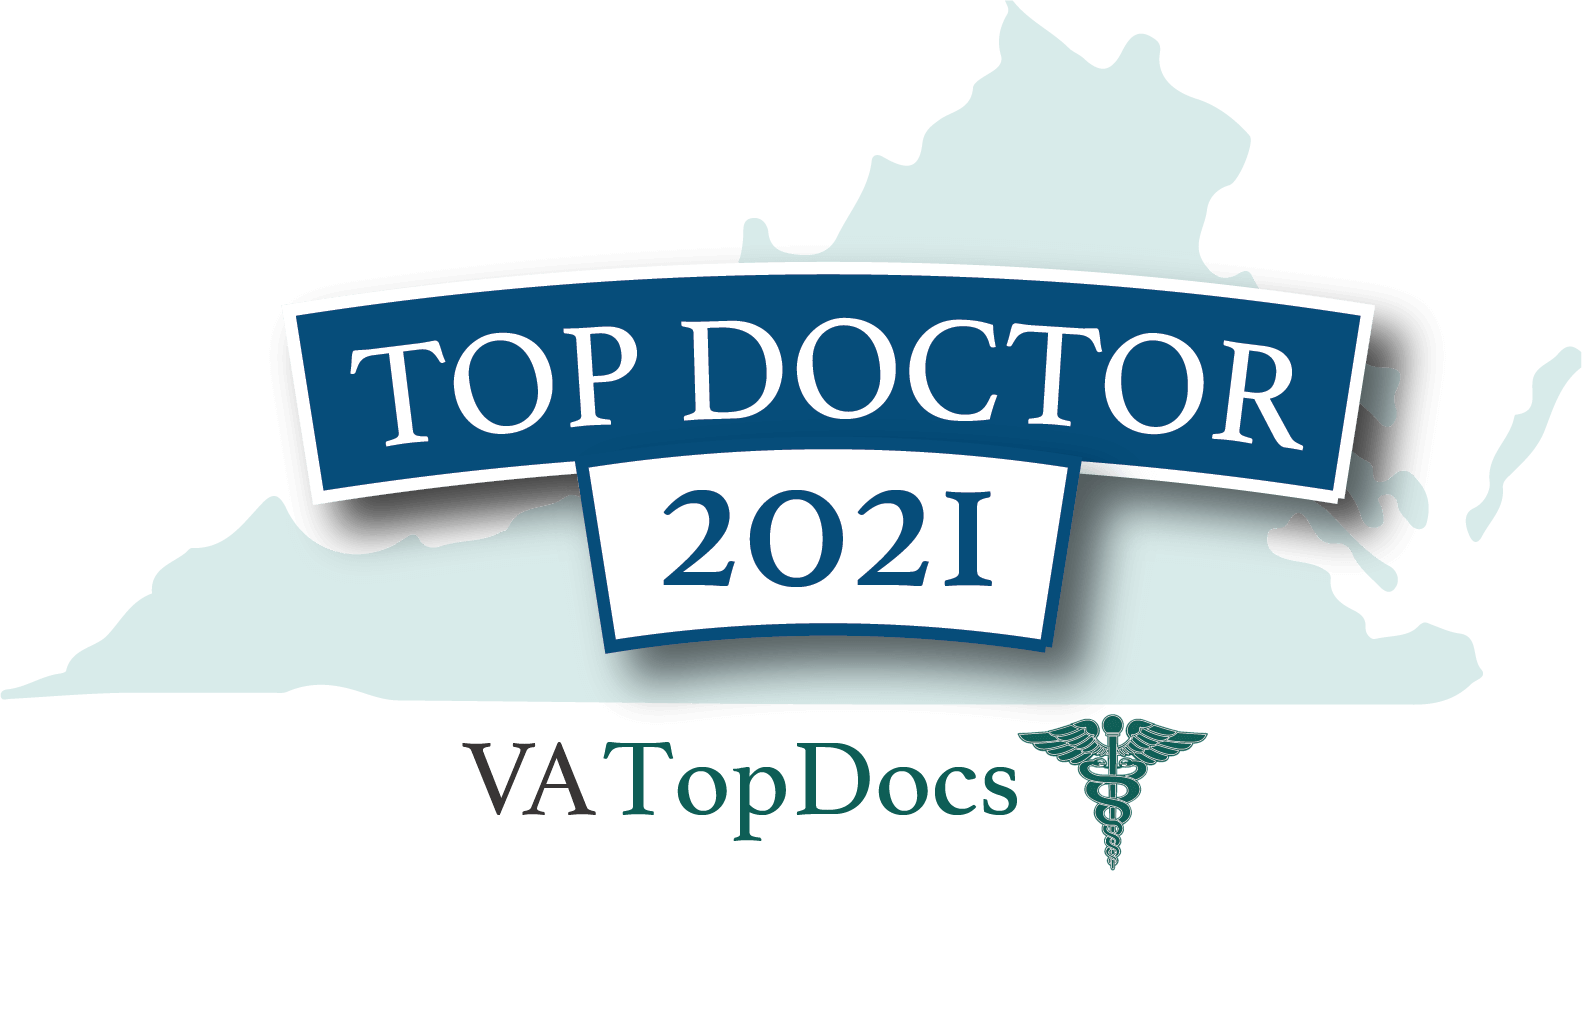 Top Doctor 2021 award by VA Top Docs